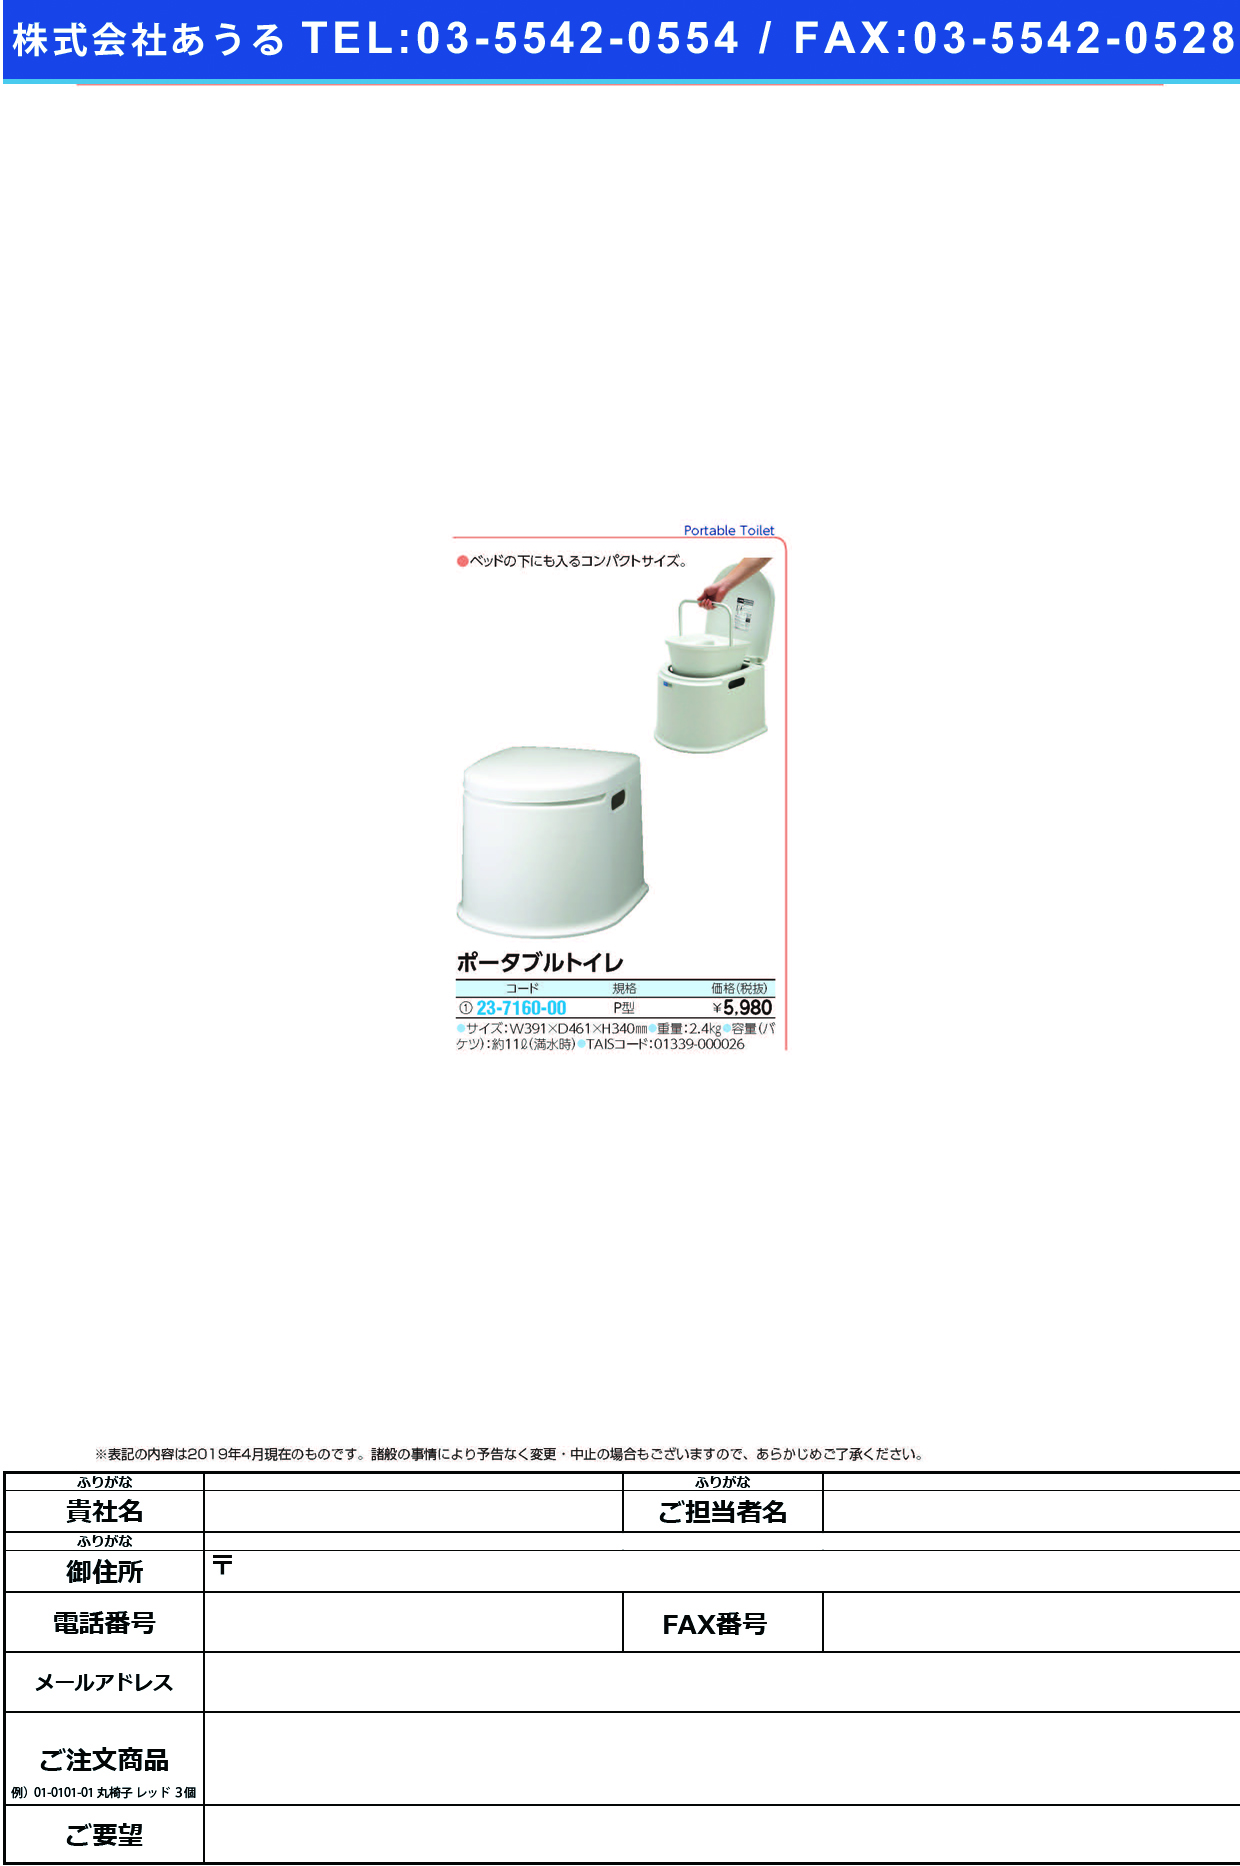 (23-7160-00)ポータブルトイレ（Ｐ型） PT-P11 ﾎﾟｰﾀﾌﾞﾙﾄｲﾚPｶﾞﾀ(山崎産業)【1台単位】【2019年カタログ商品】